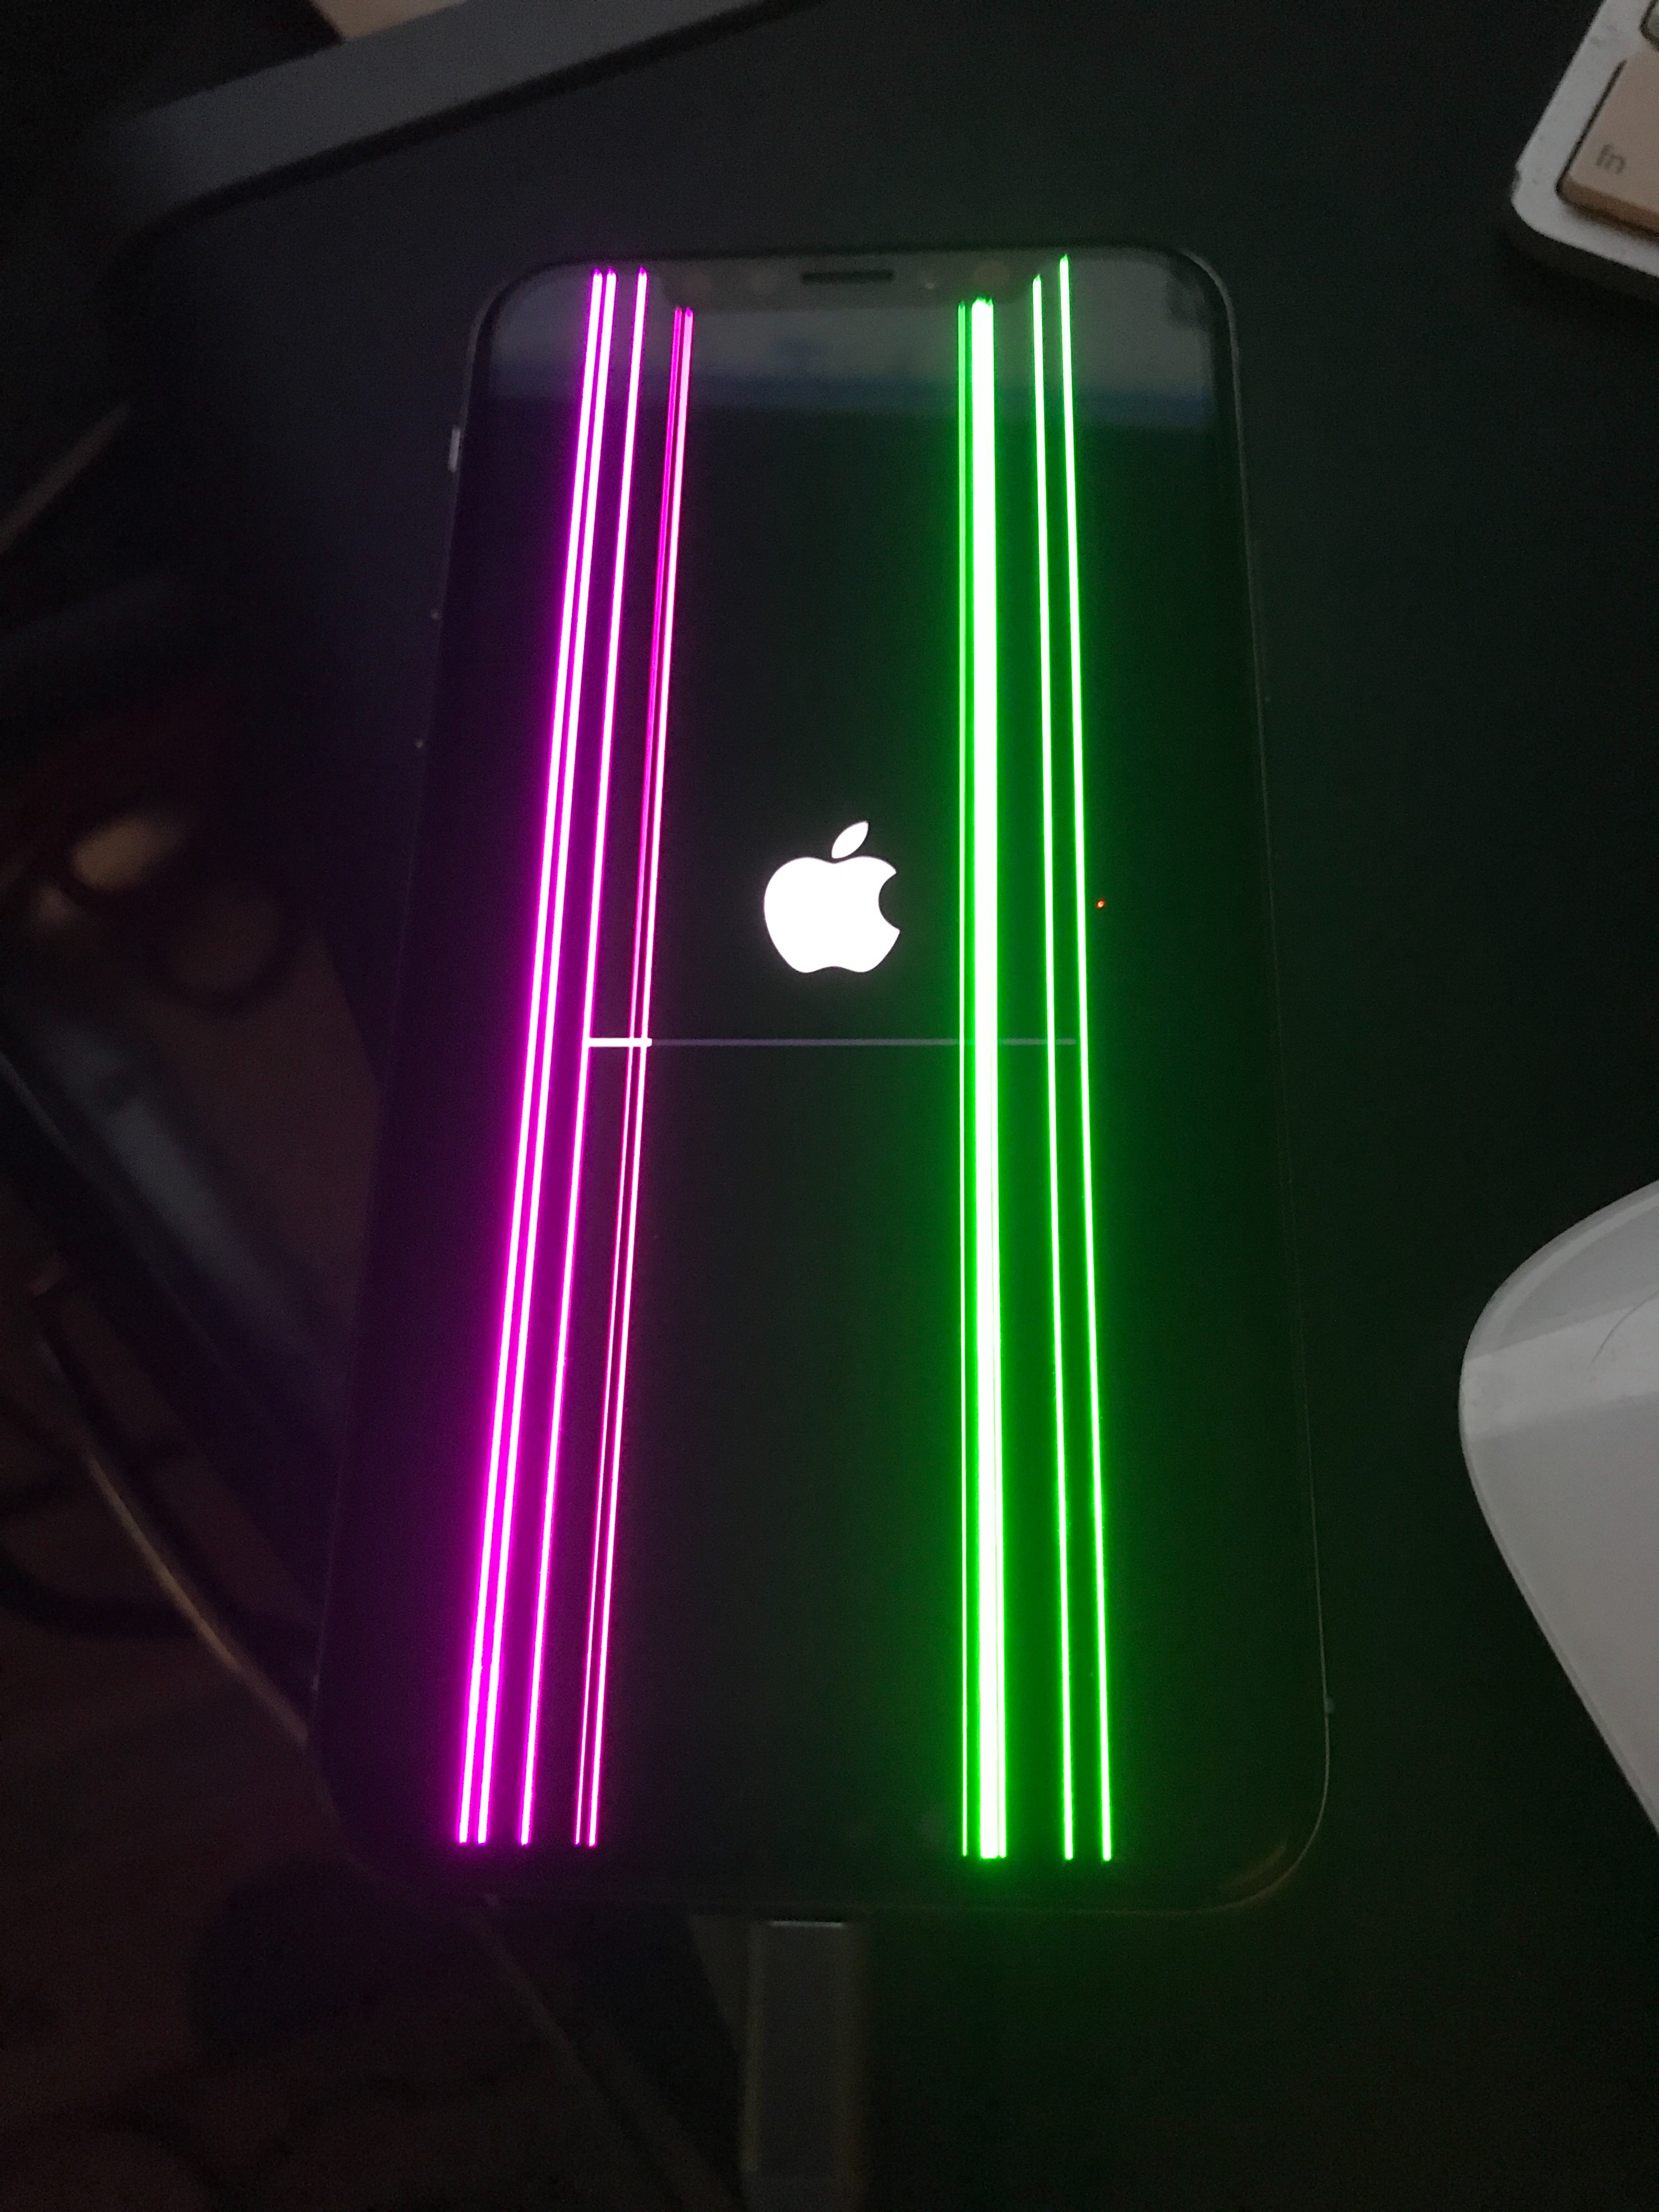 Полоска айфон 11. Айфон 10 XS зеленый. Зеленая полоса на айфоне. Зеленые полосы на экране айфона. Зеленая полоска на айфоне.